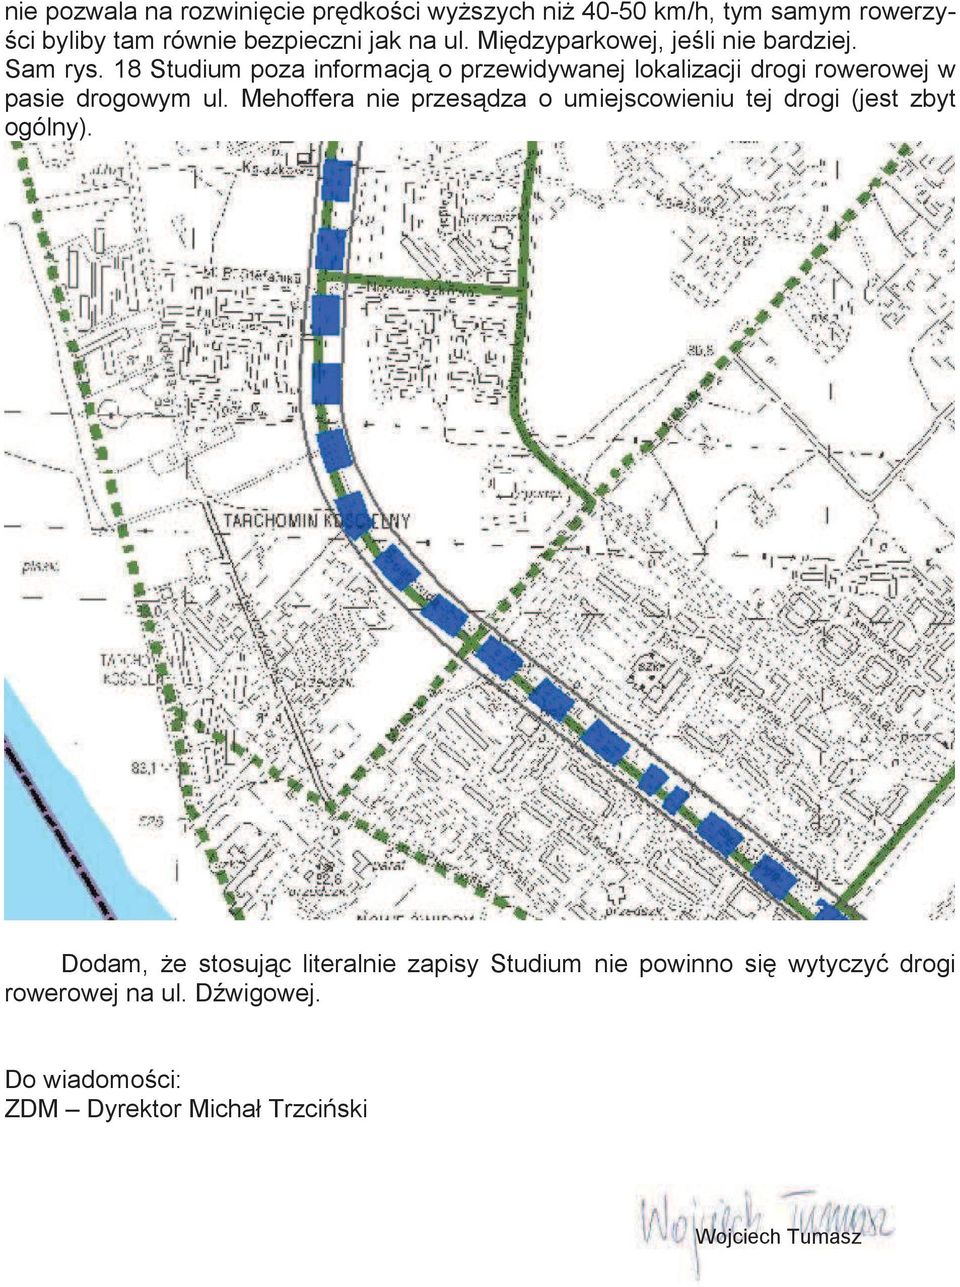 18 Studium poza informacj o przewidywanej lokalizacji drogi rowerowej w pasie drogowym ul.